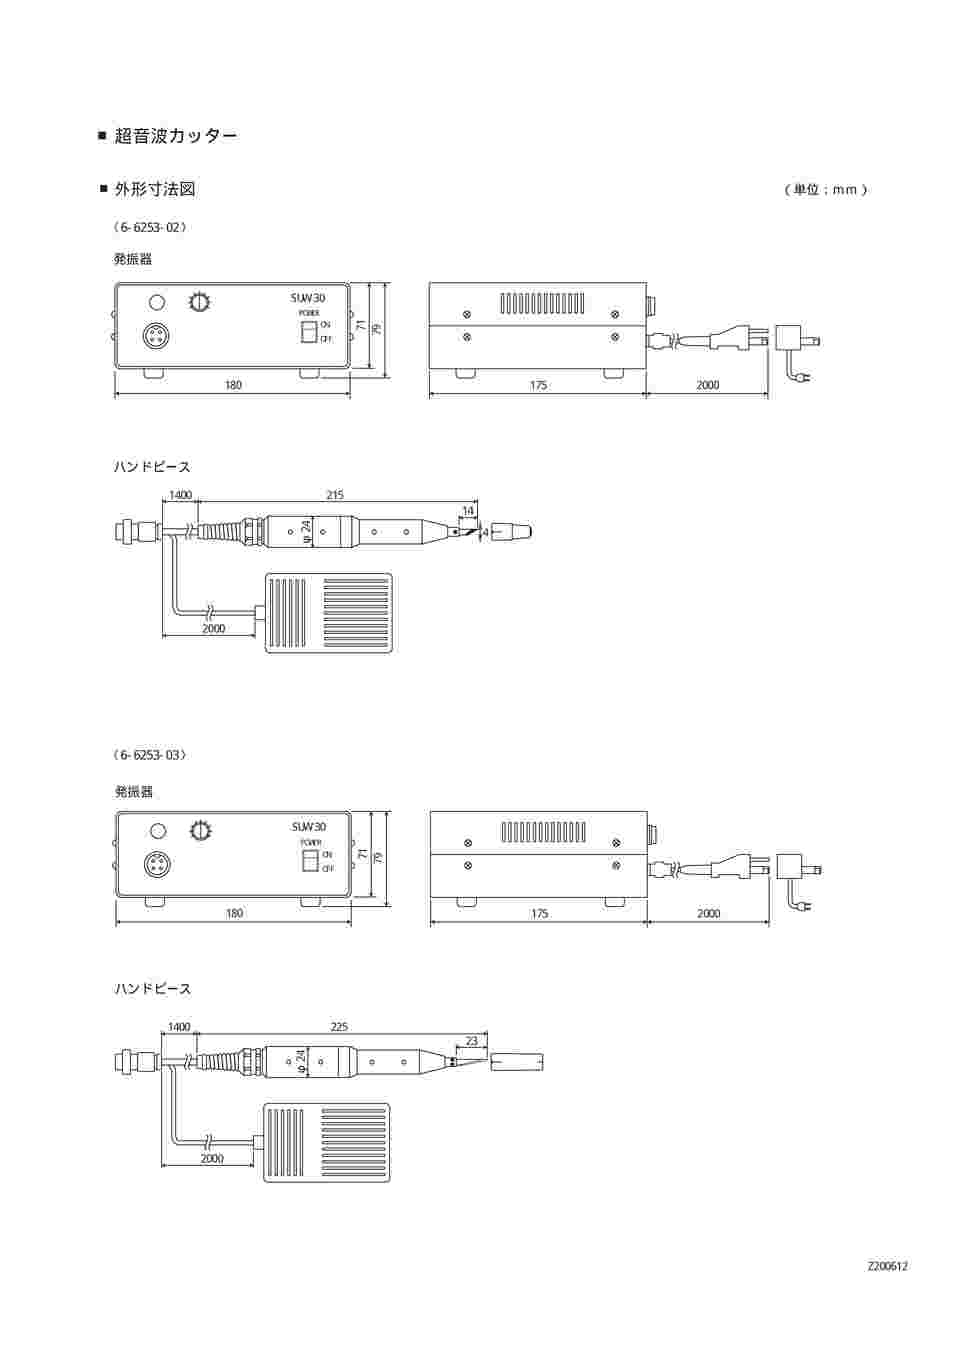 スズキ 超音波カッター SUW-30シリーズ フットスイッチ付 SUW-30CT (6-6253-02) - 3